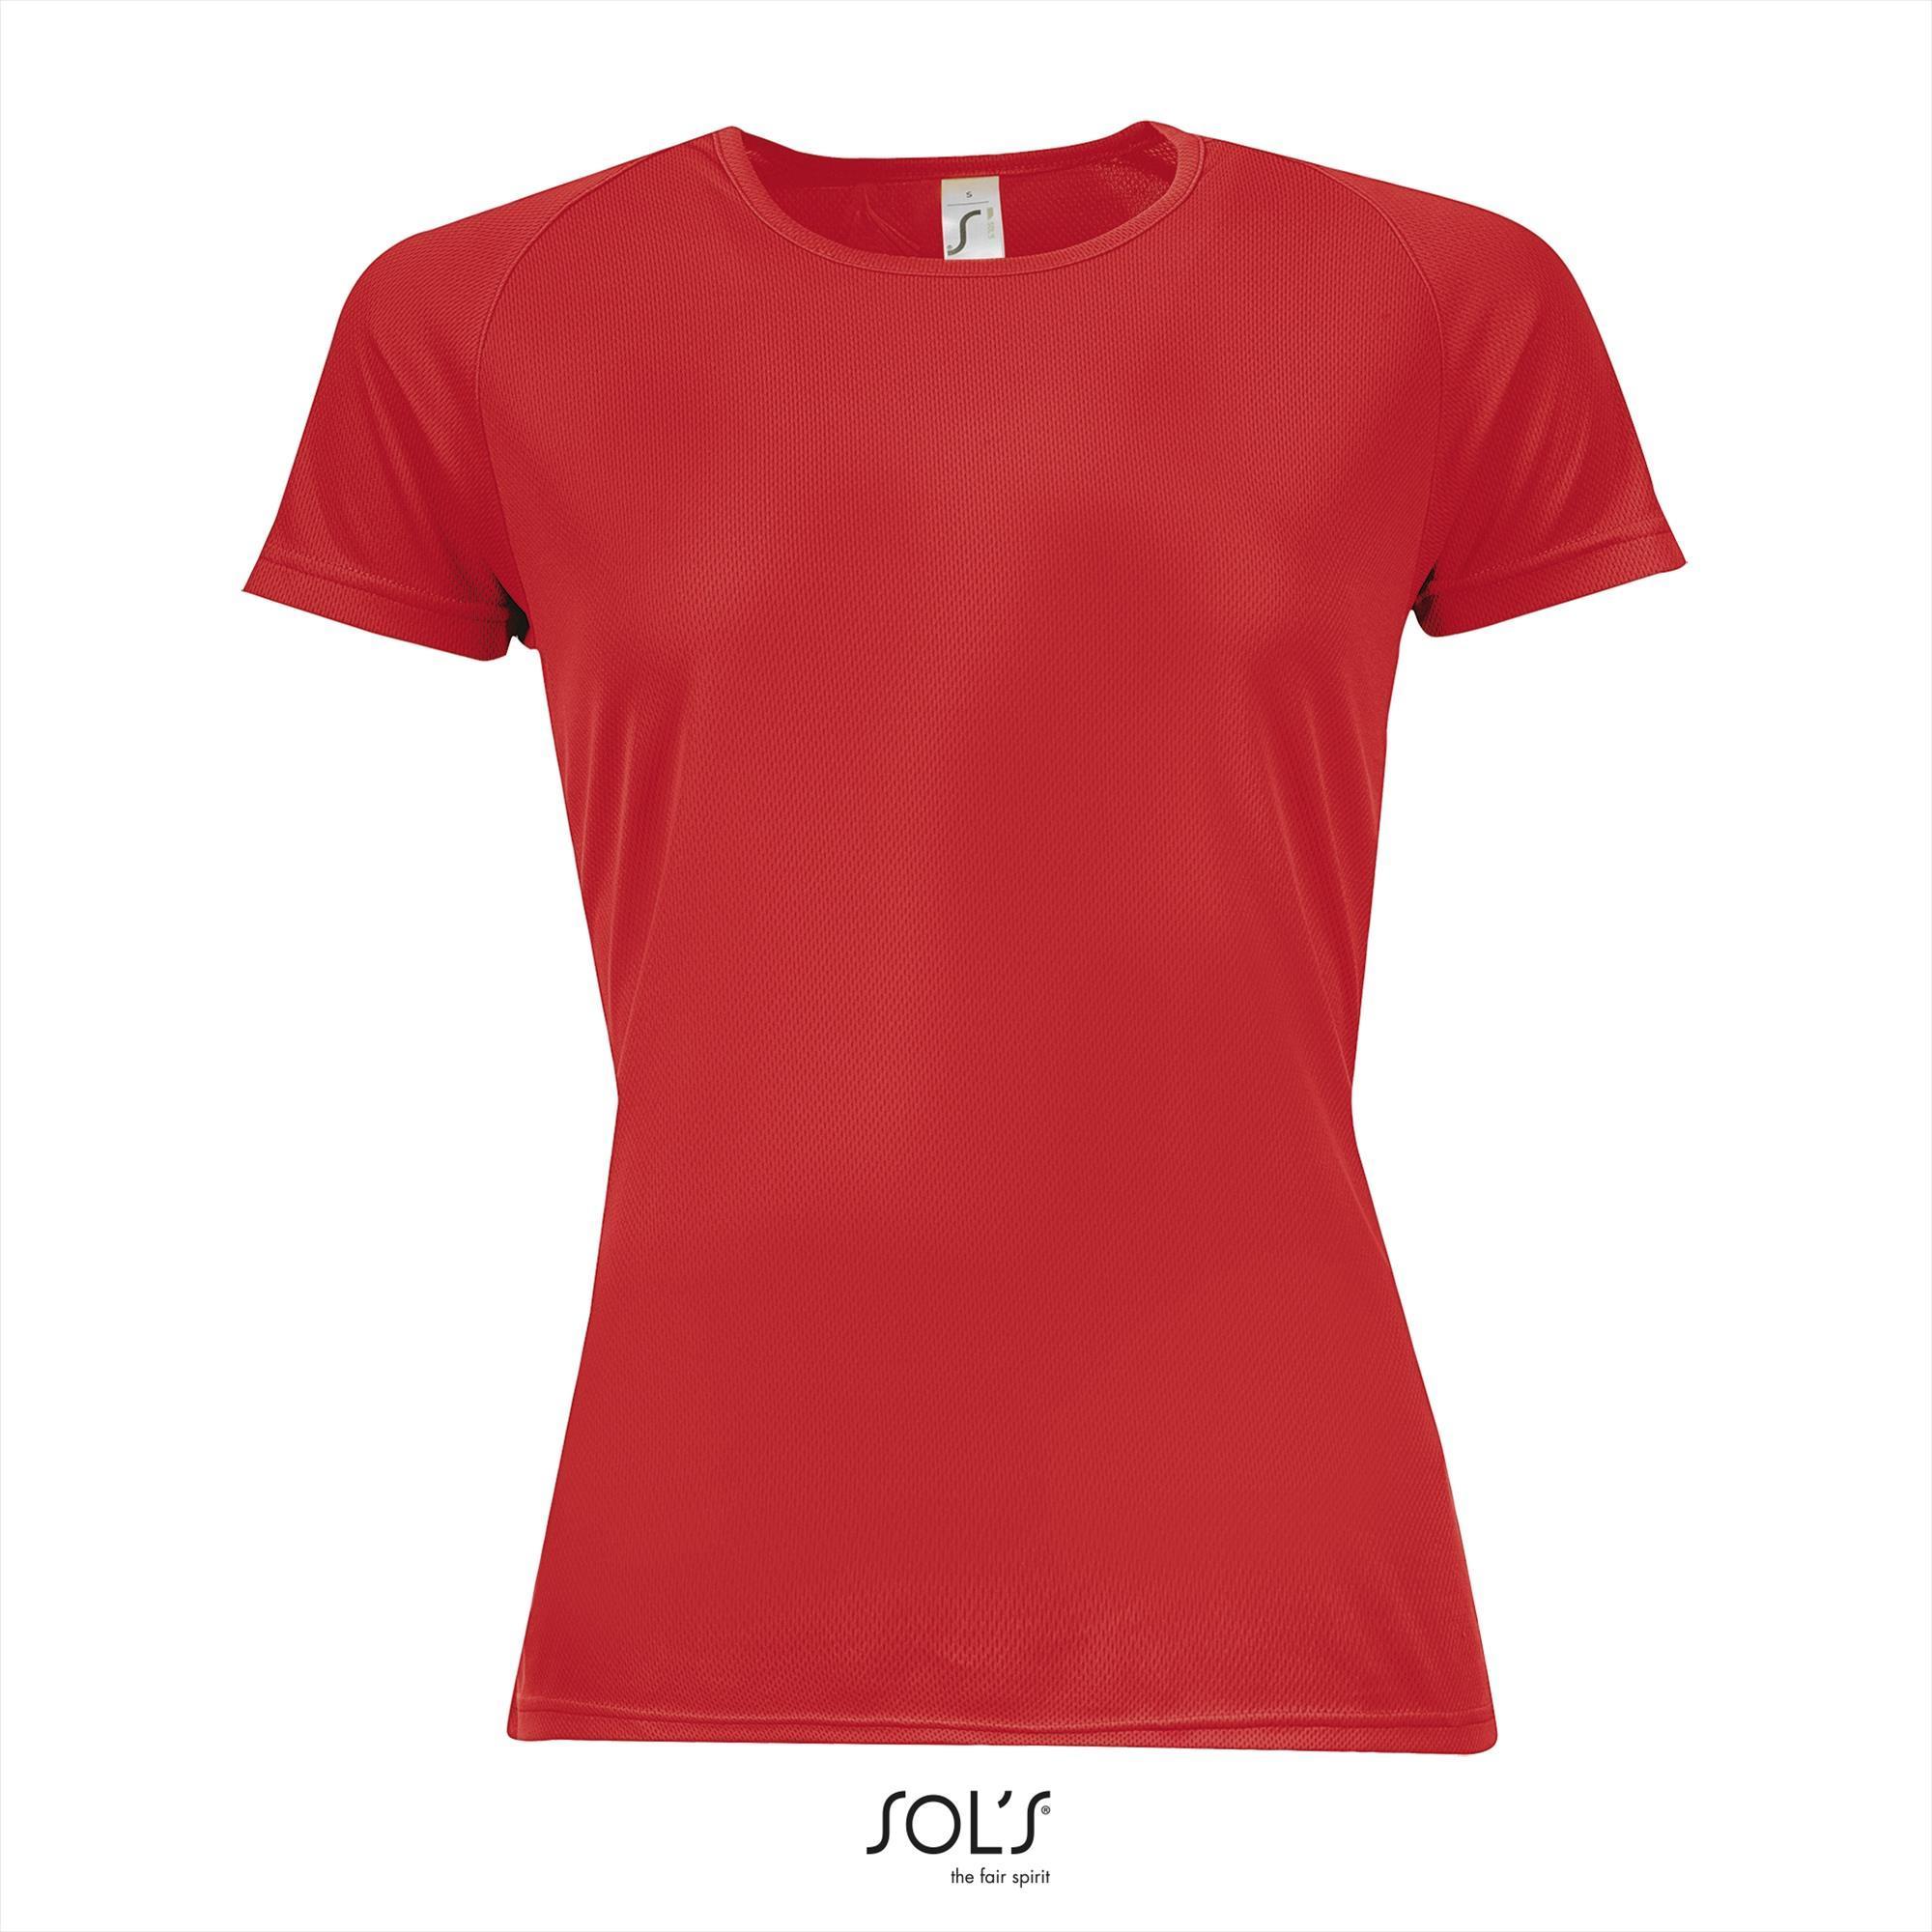 Rood Dames sportshirt met ademend effect en langer rugpand Dri-FIT.